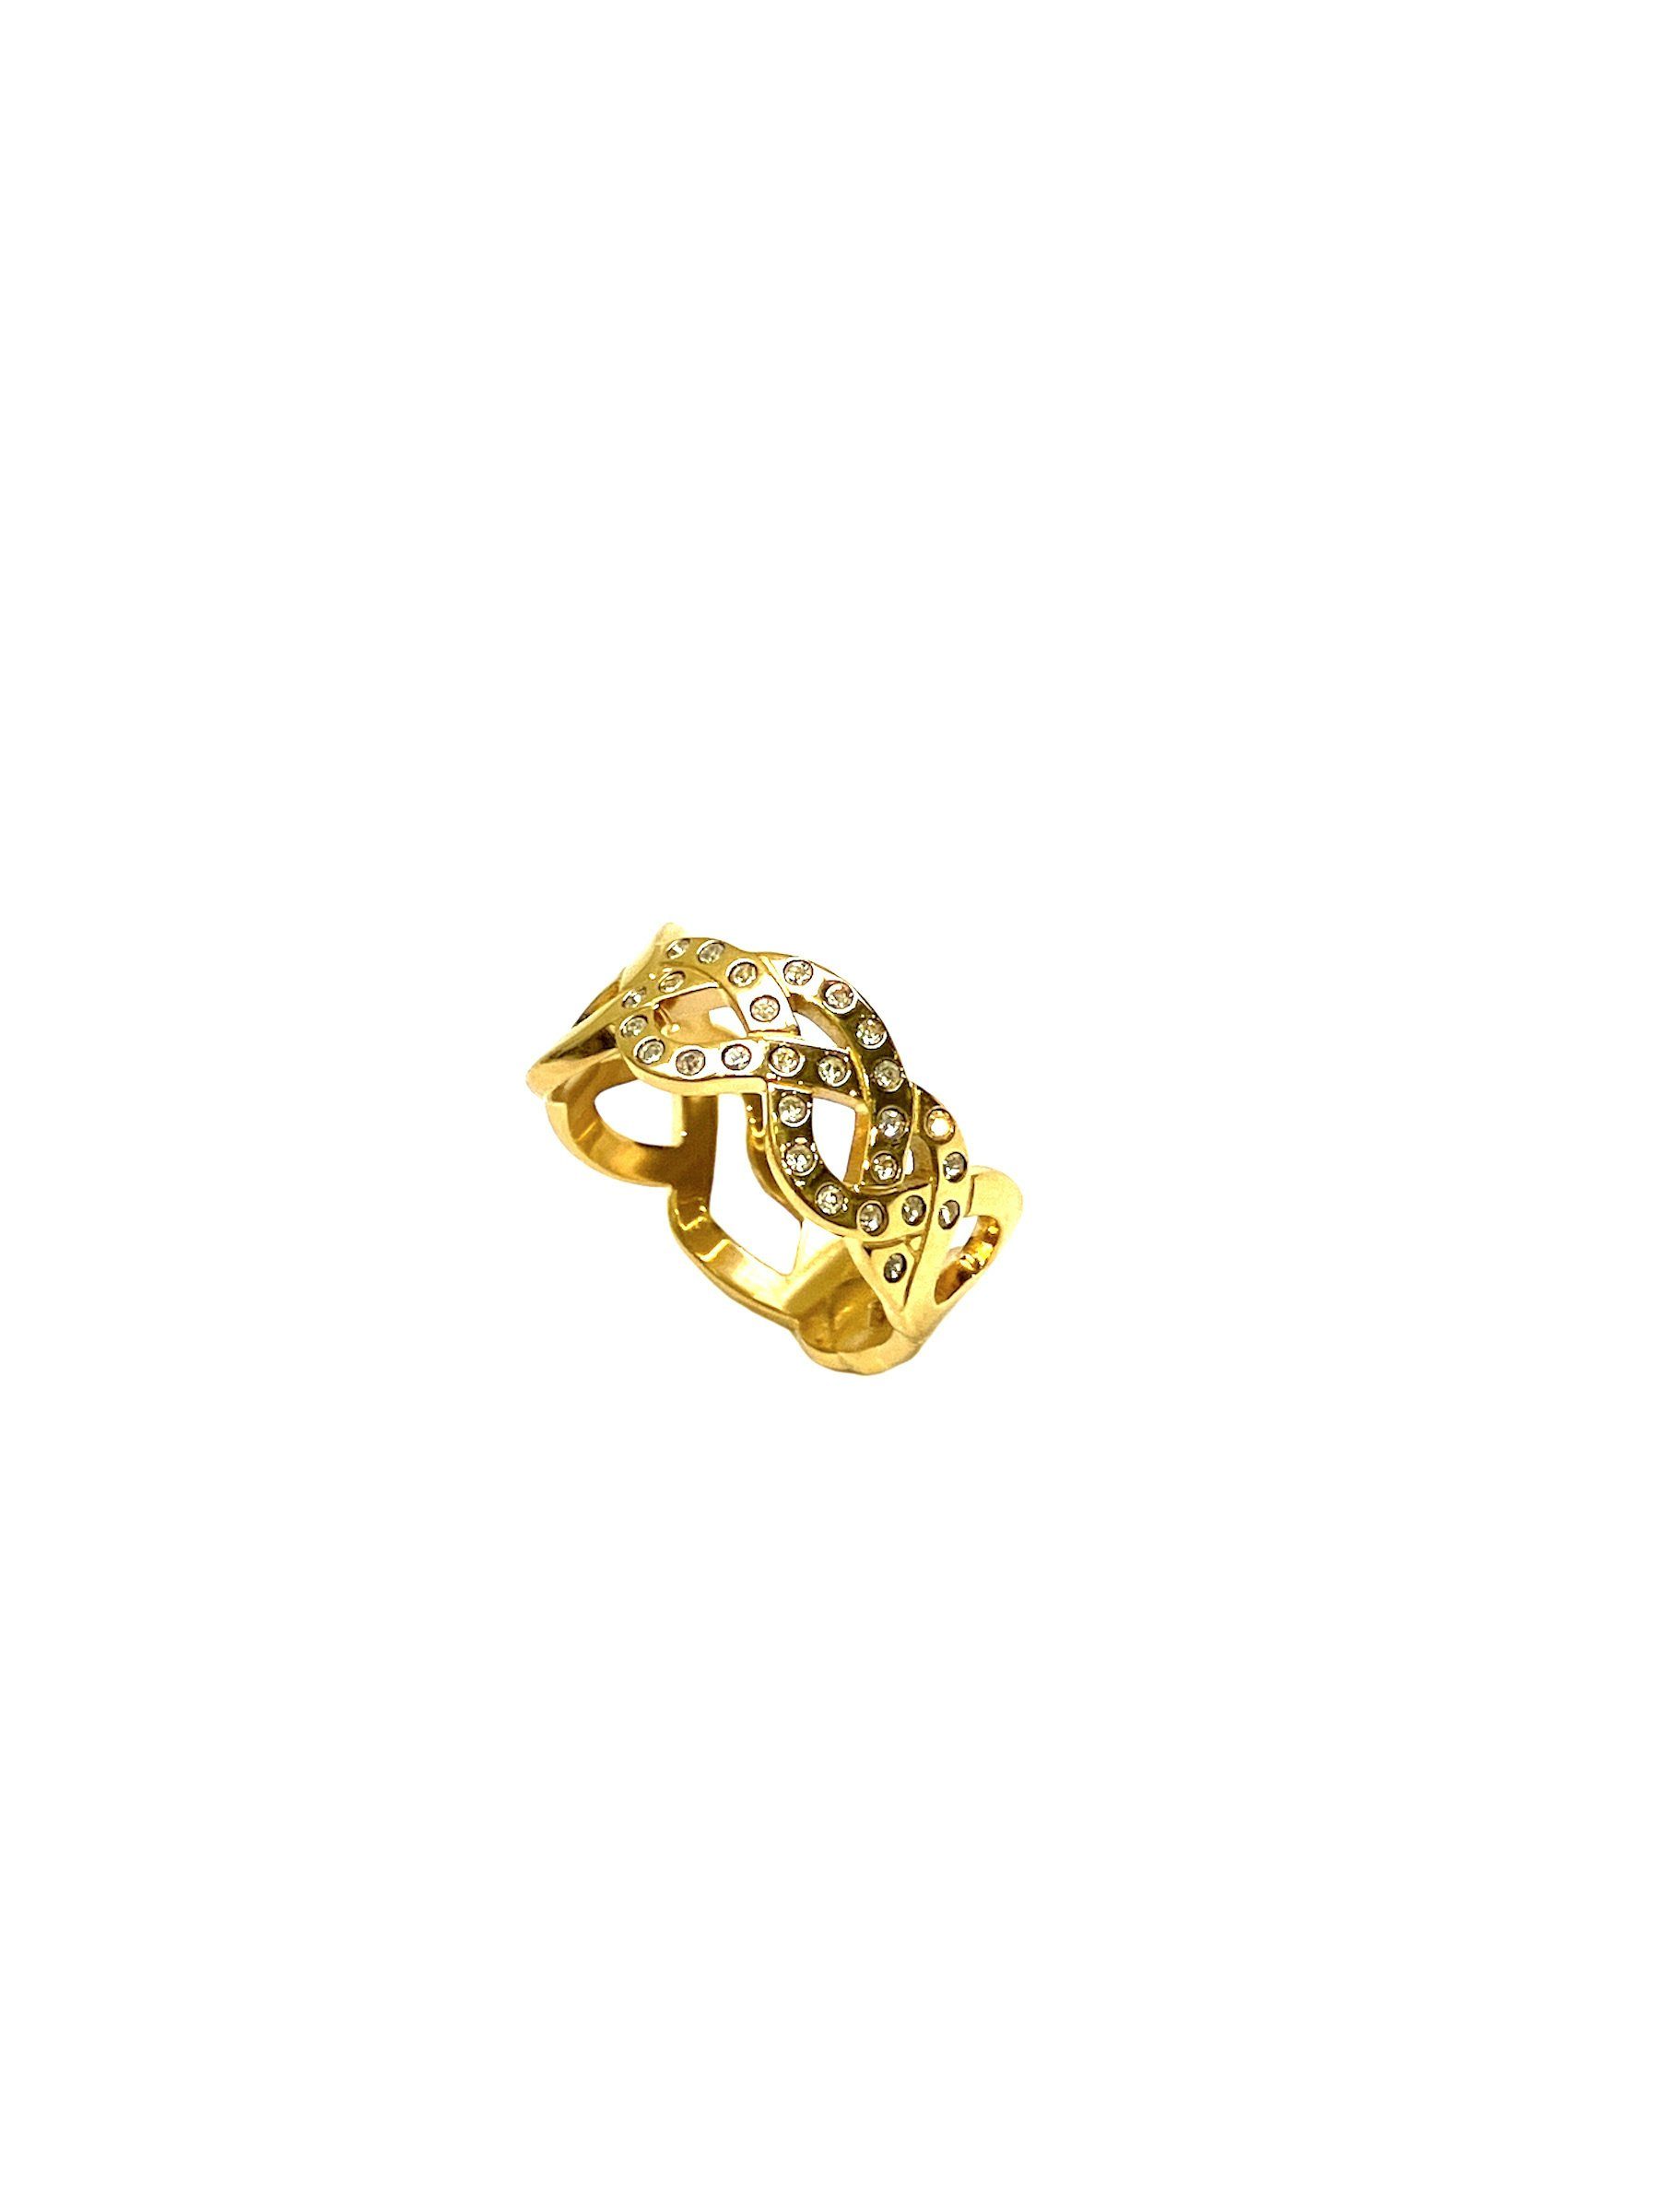 Swatch Bijoux Fingerring JRJ018-7, Geschwungene Ringschiene die einer Krone ähnelt